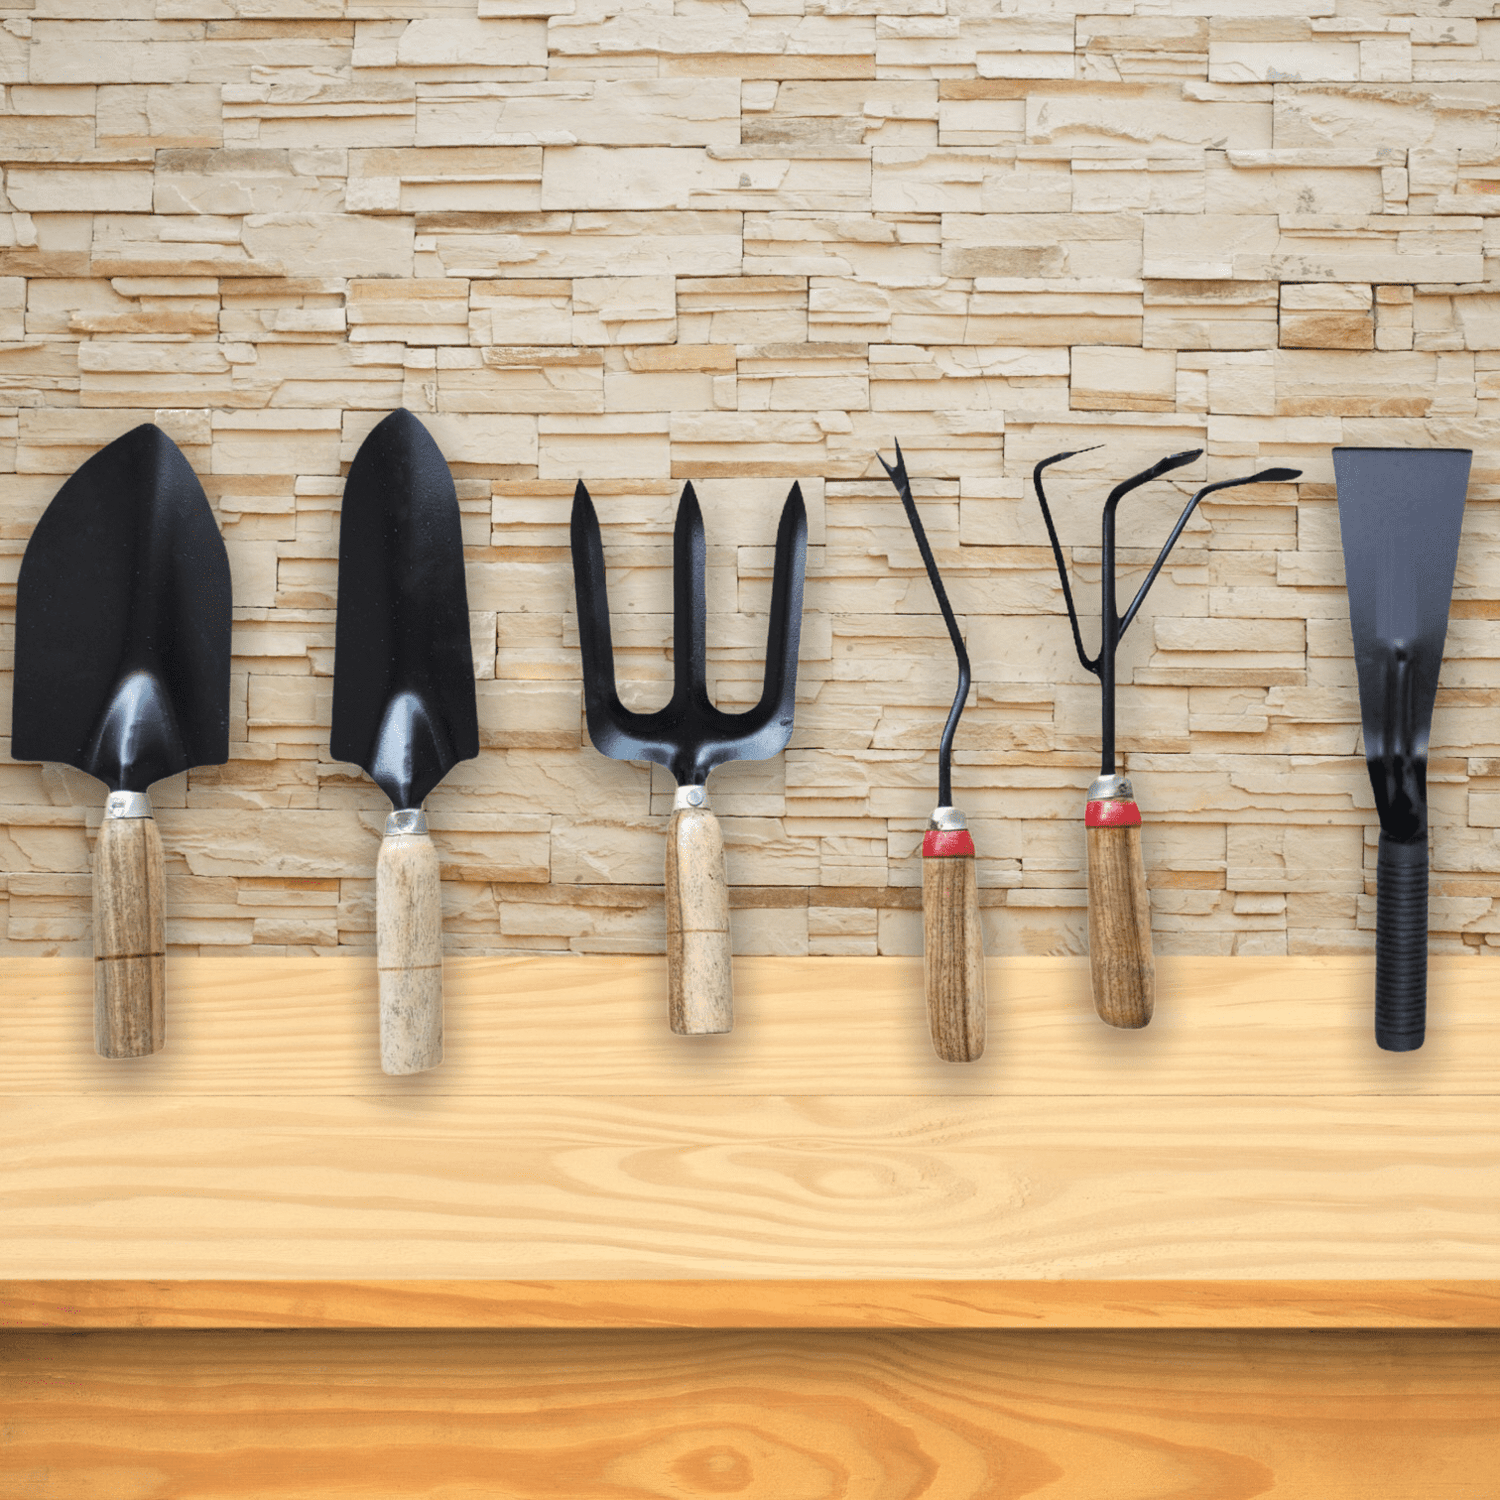 Gardening Tools - Set of 6 - Wooden Handle